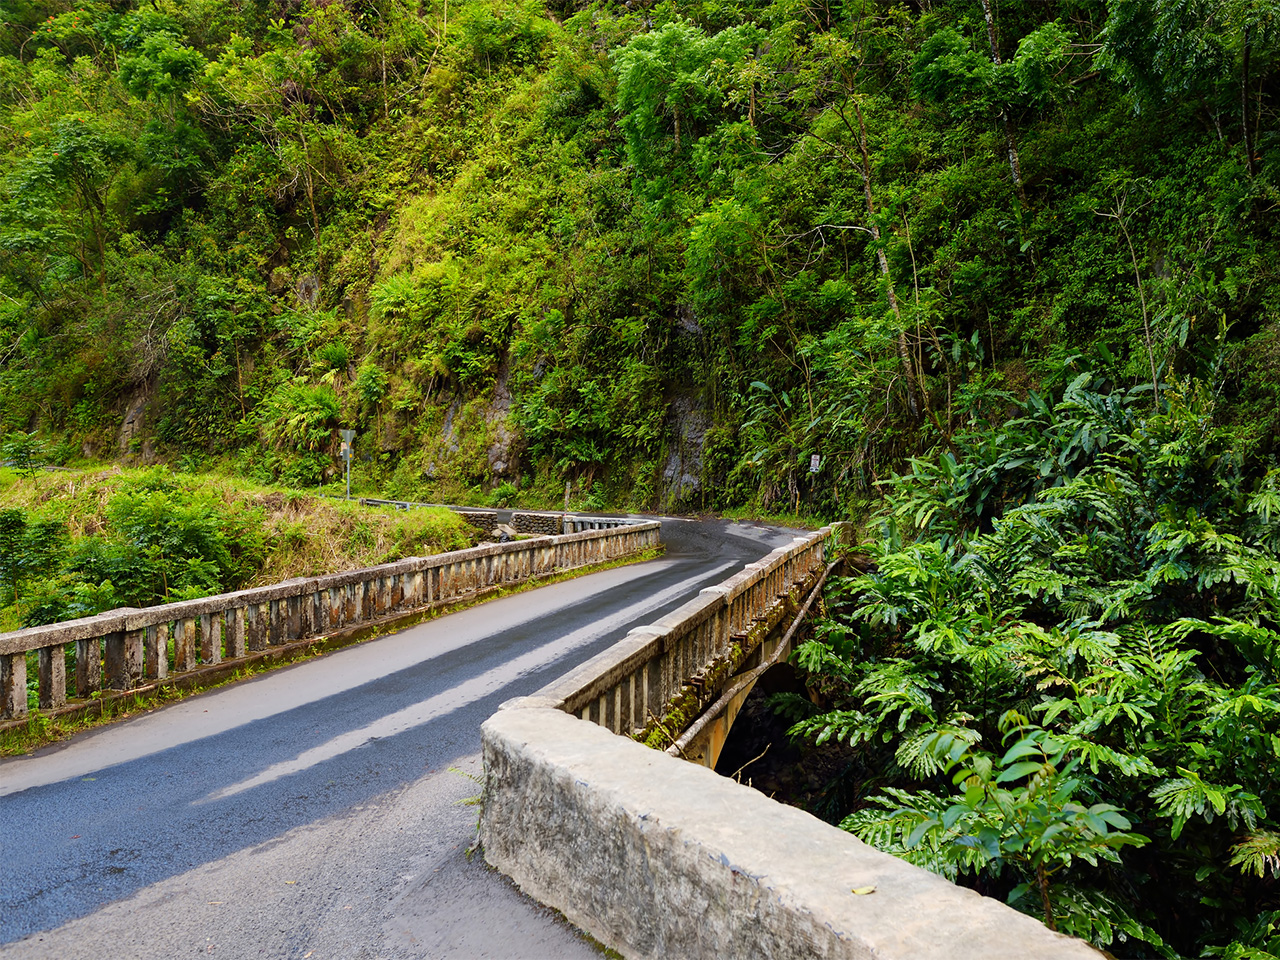 A narrow one-lane bridge along Maui's famous Road to Hana.